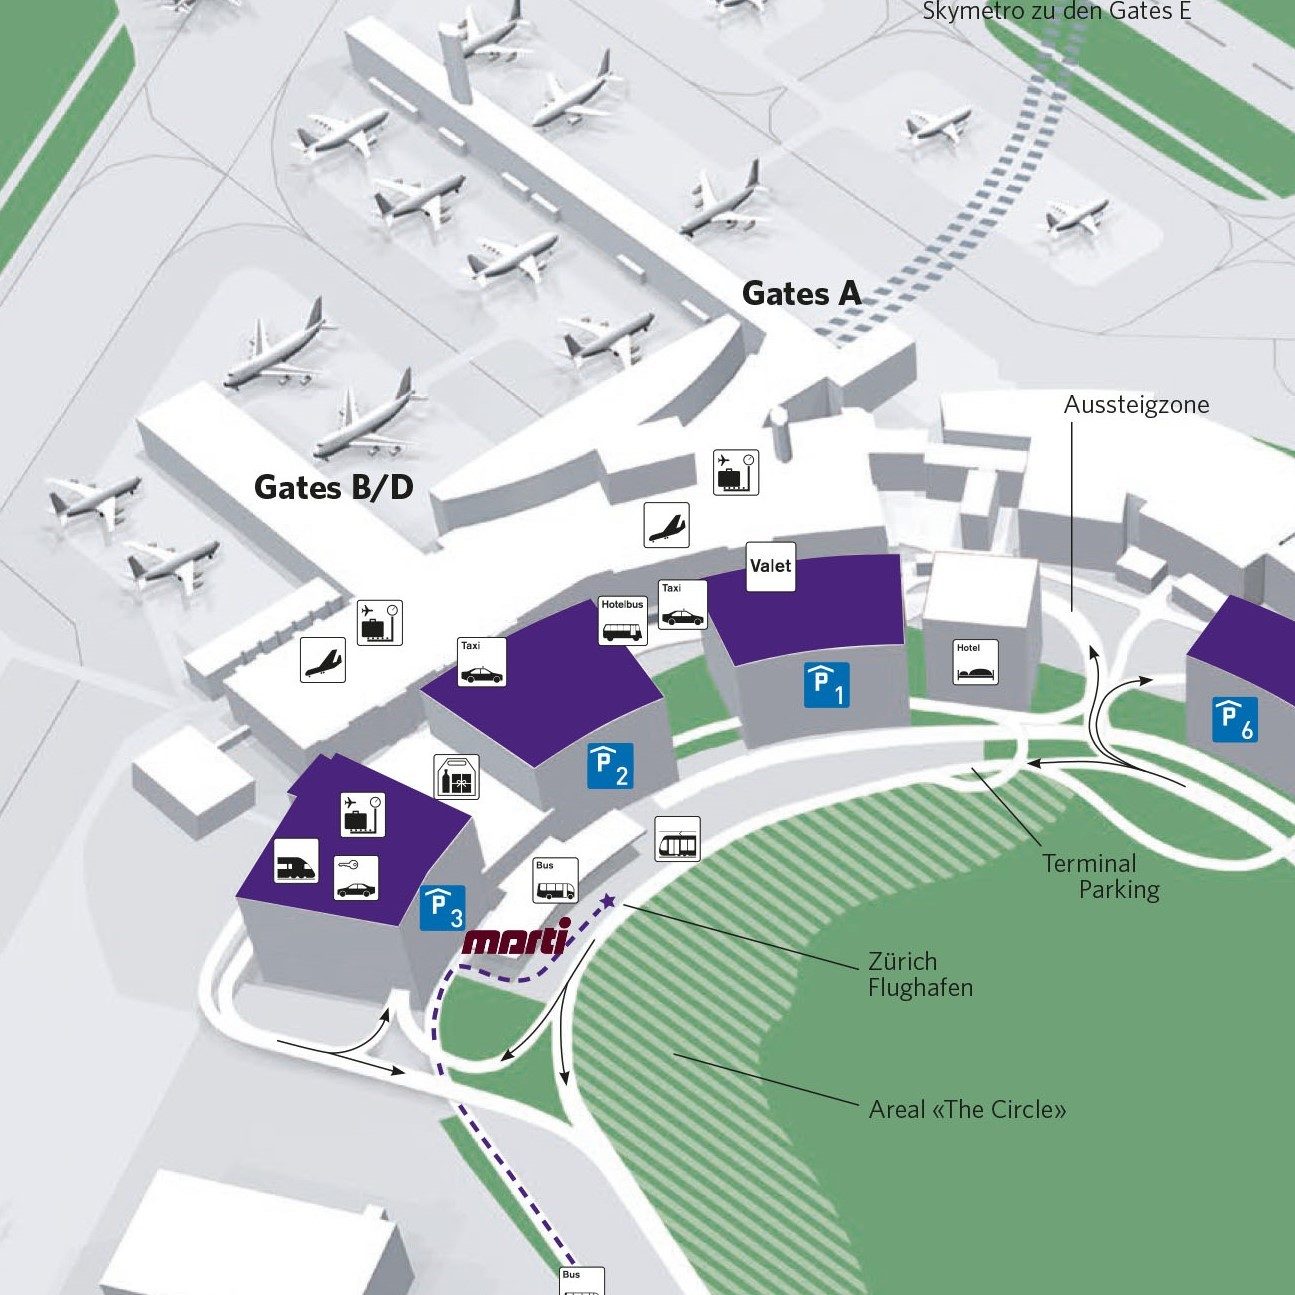 Plan Anfahrt Flughafen Zuerich 2015.indd